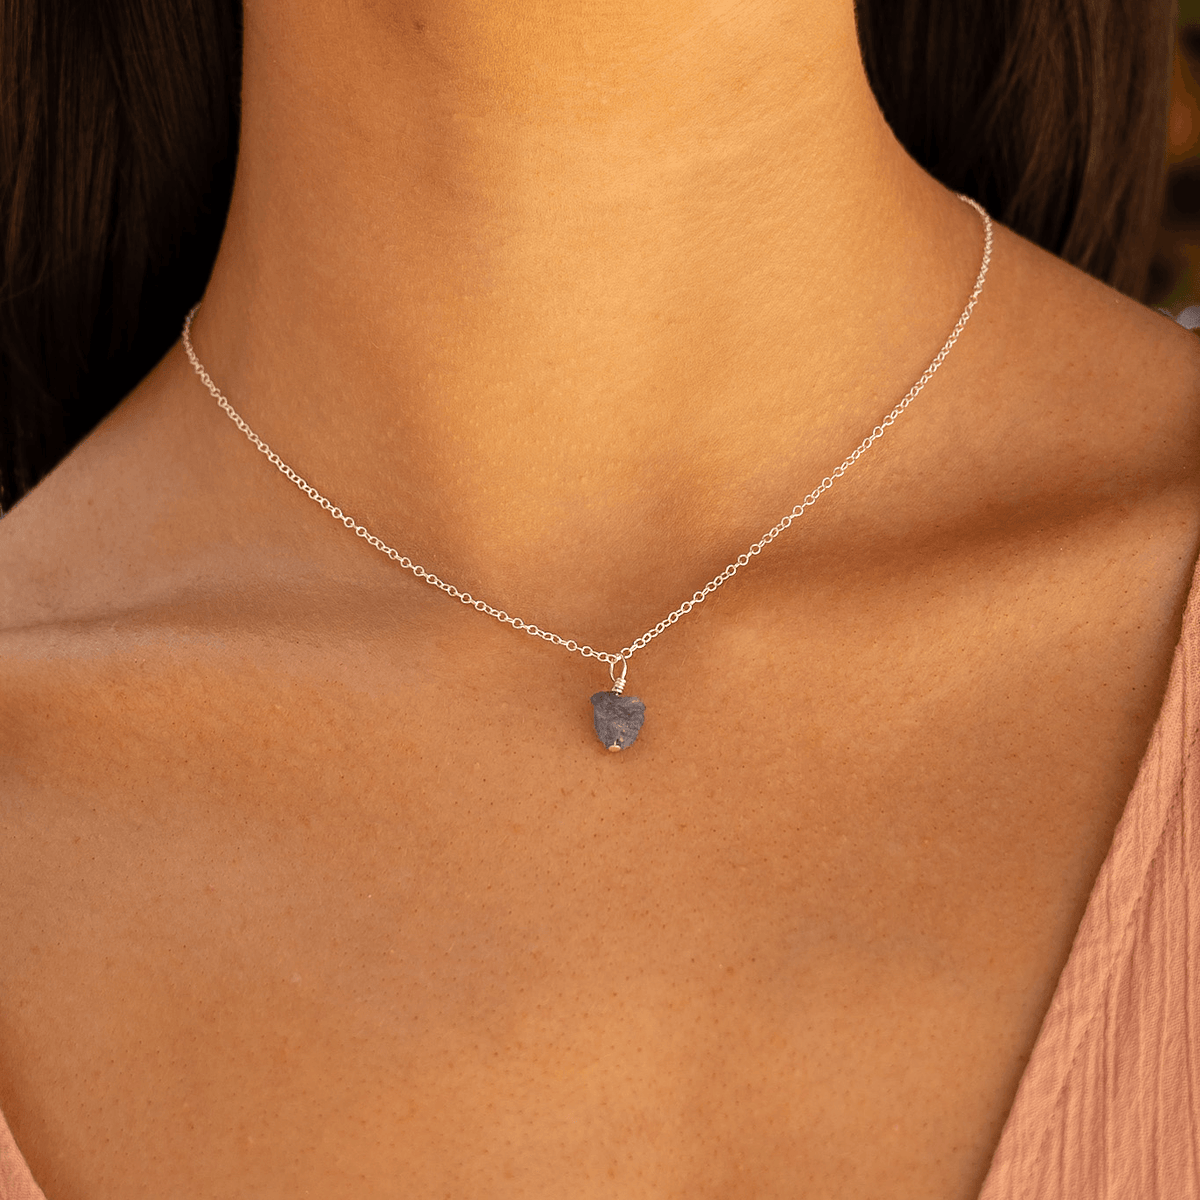 Tiny Raw Tanzanite Pendant Necklace - Tiny Raw Tanzanite Pendant Necklace - Sterling Silver / Cable - Luna Tide Handmade Crystal Jewellery